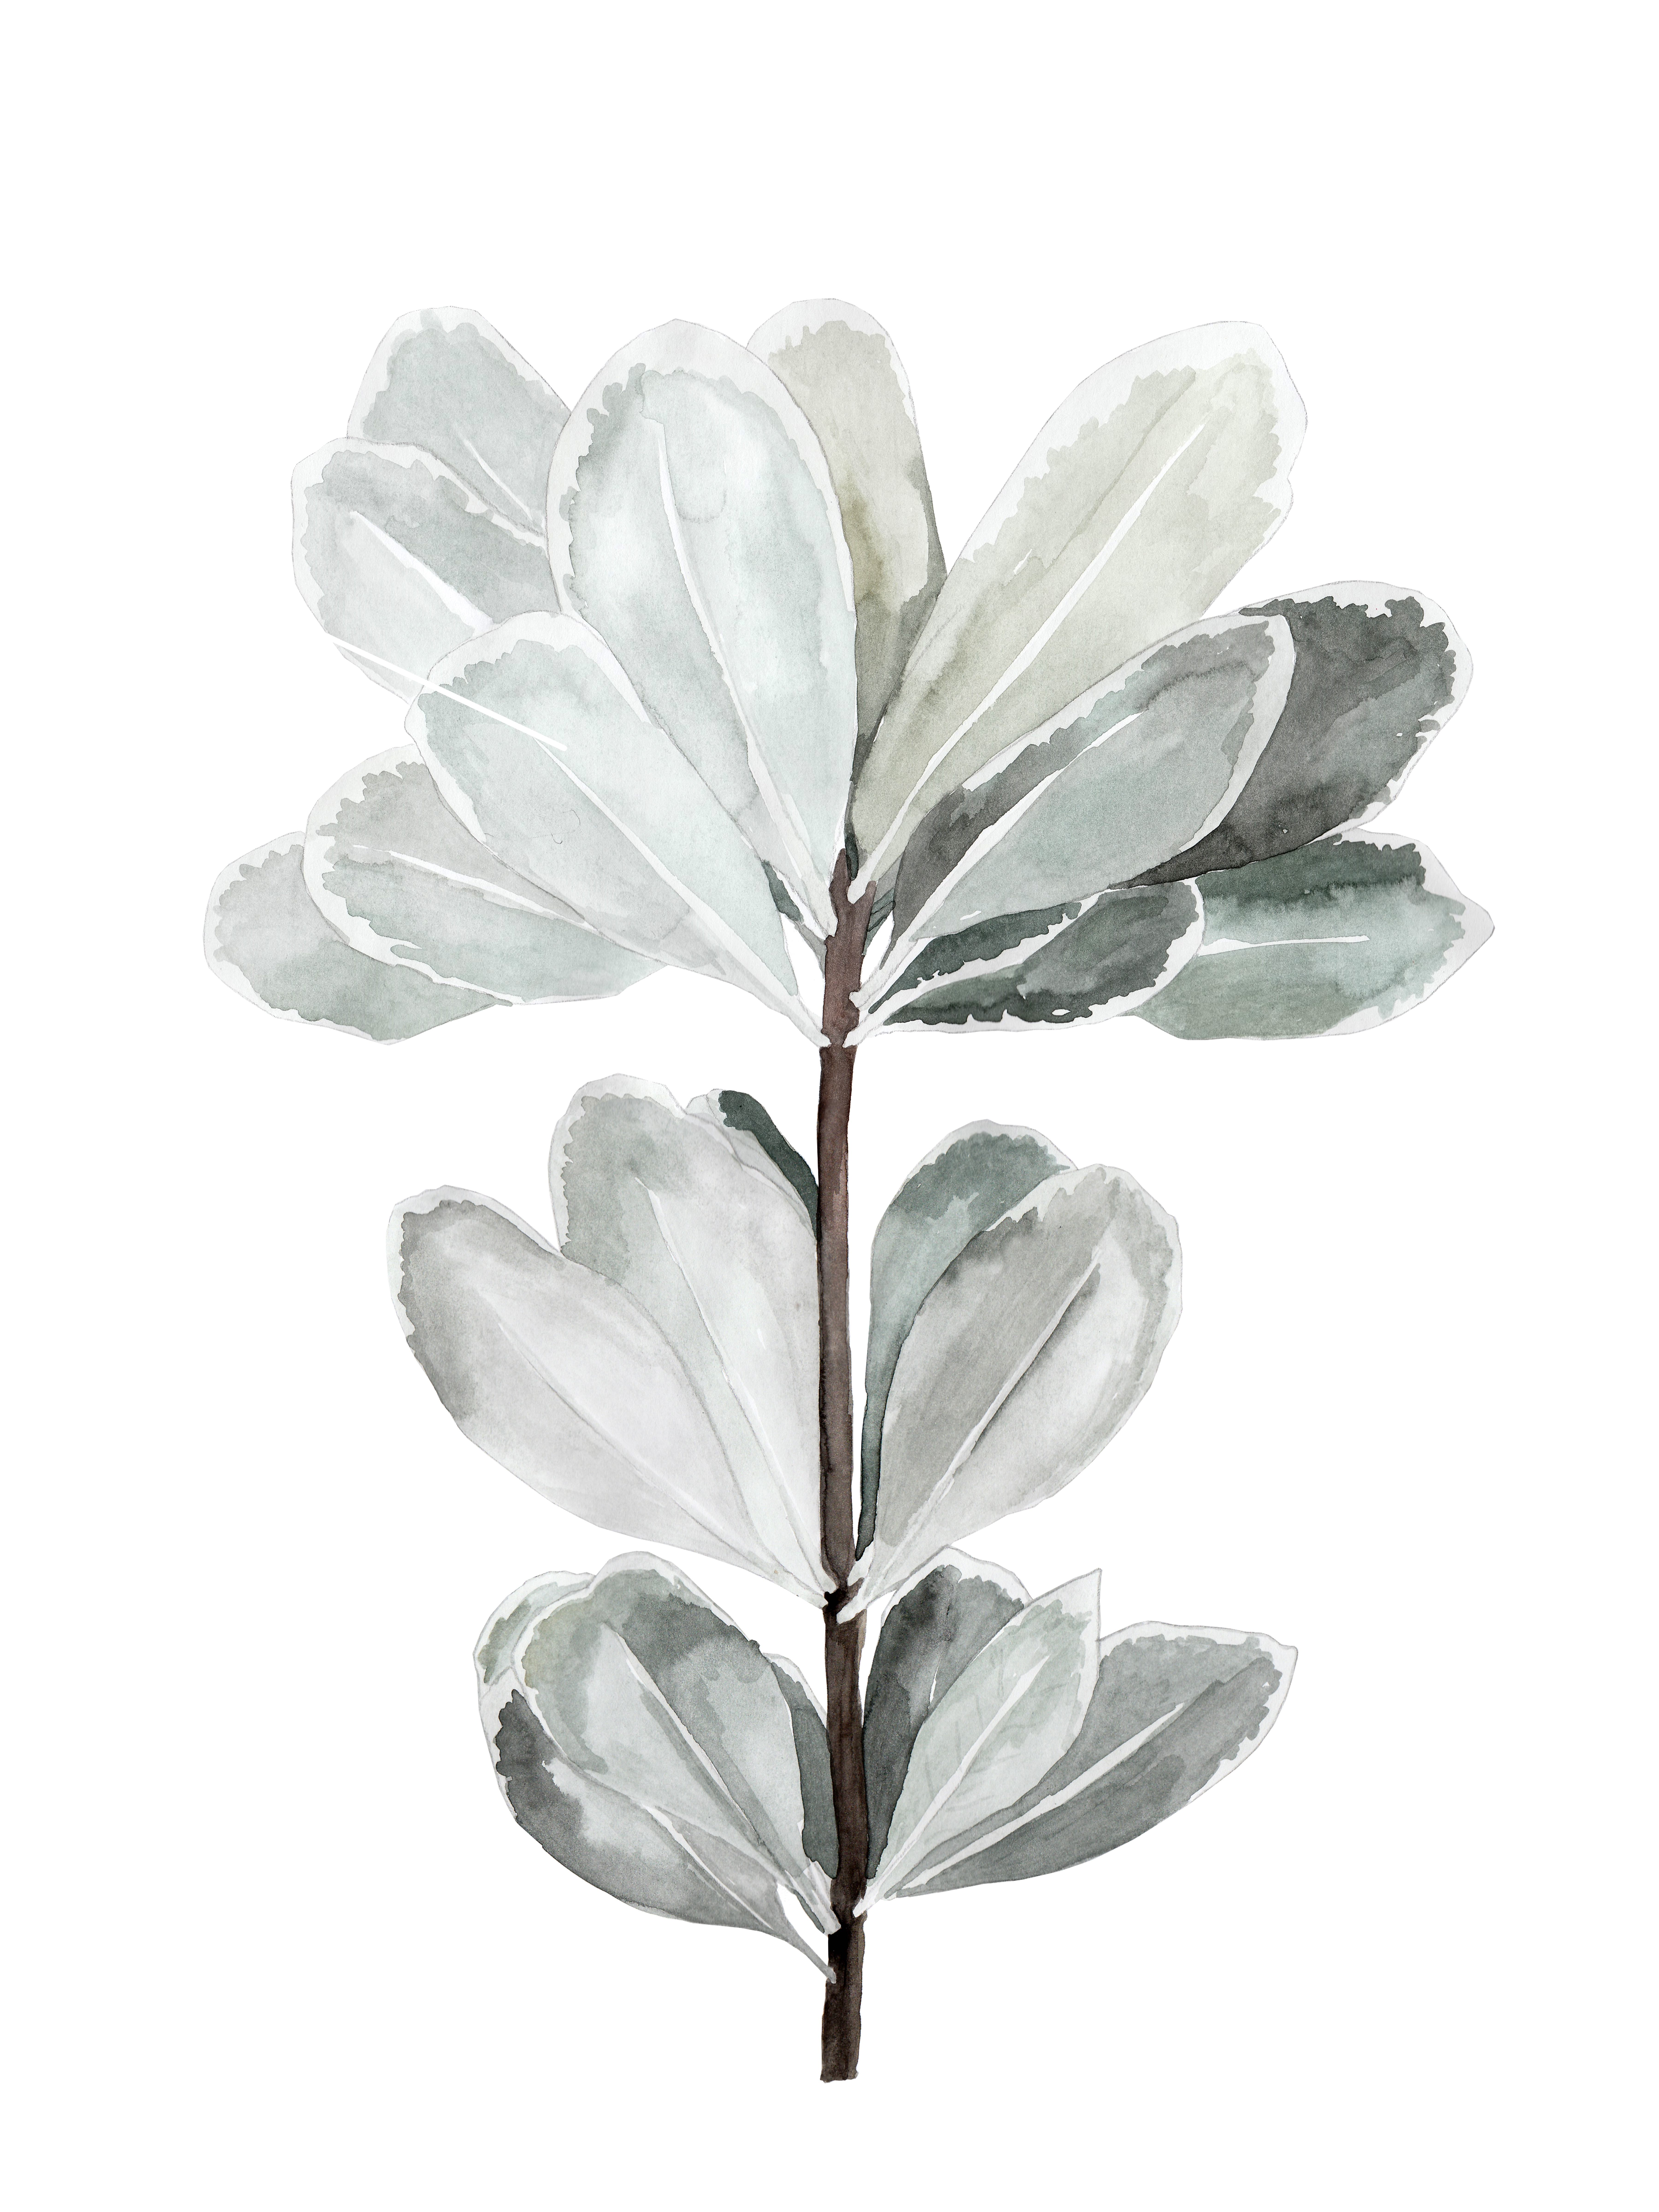 749-botanical-illustration---blatter3.jpg